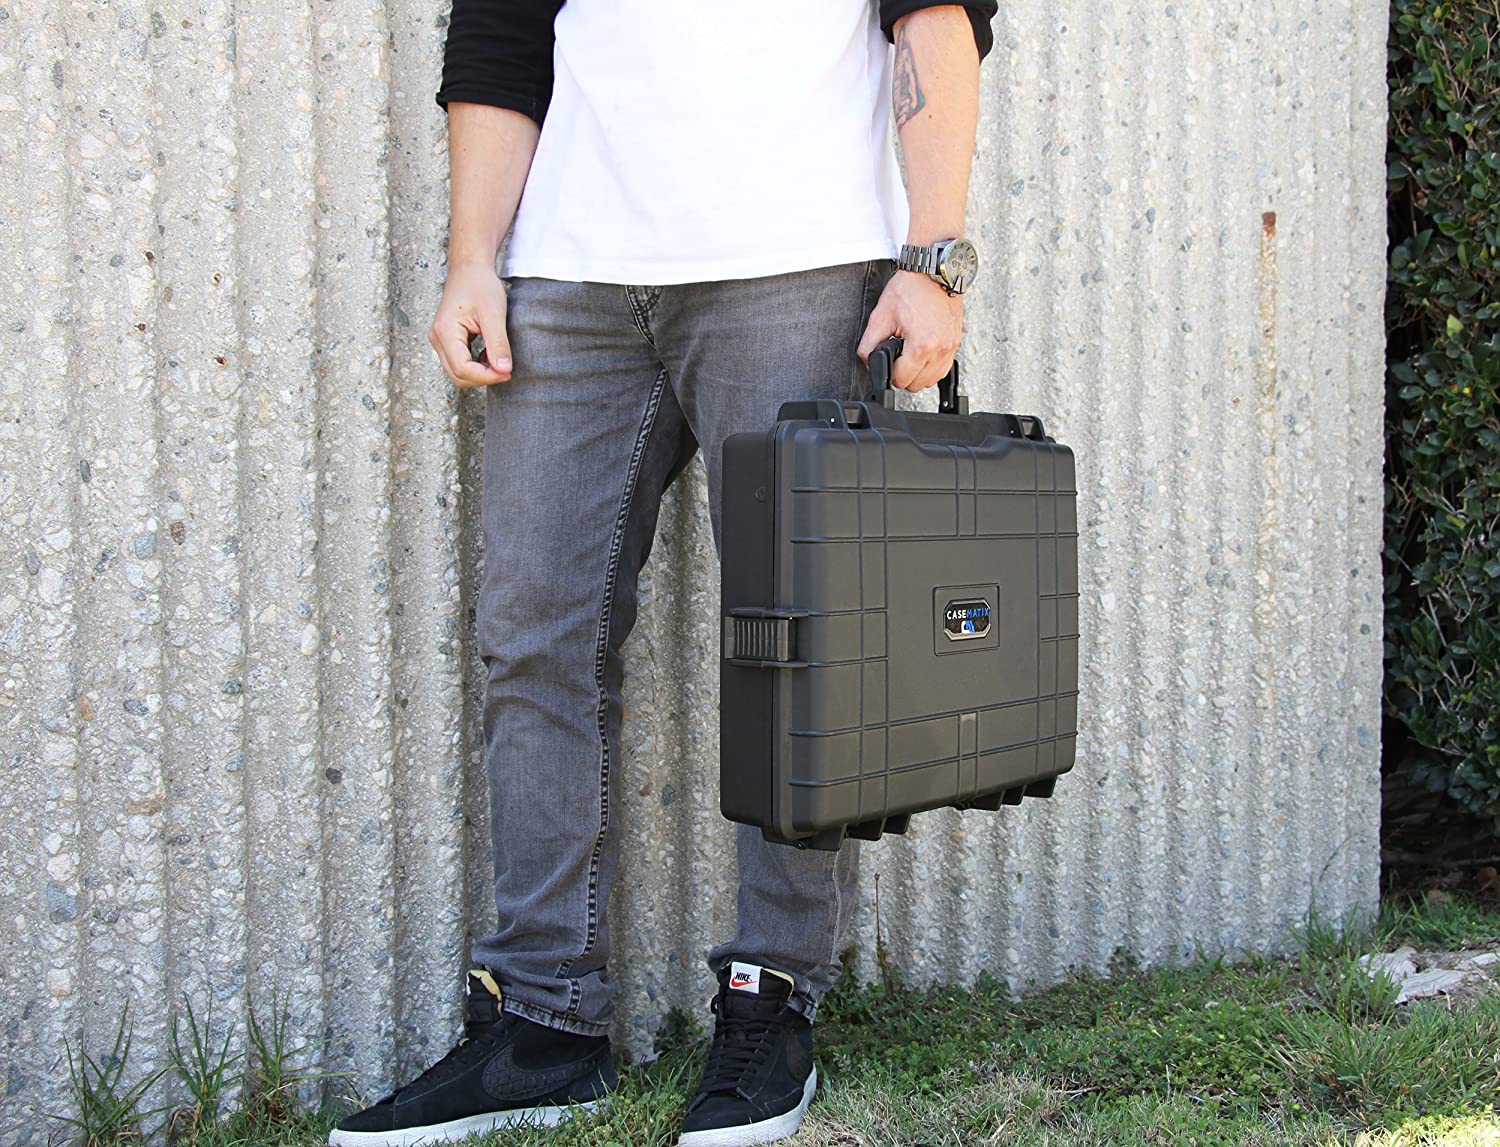 Case Logic Laptop Backpack | Case Logic | United States